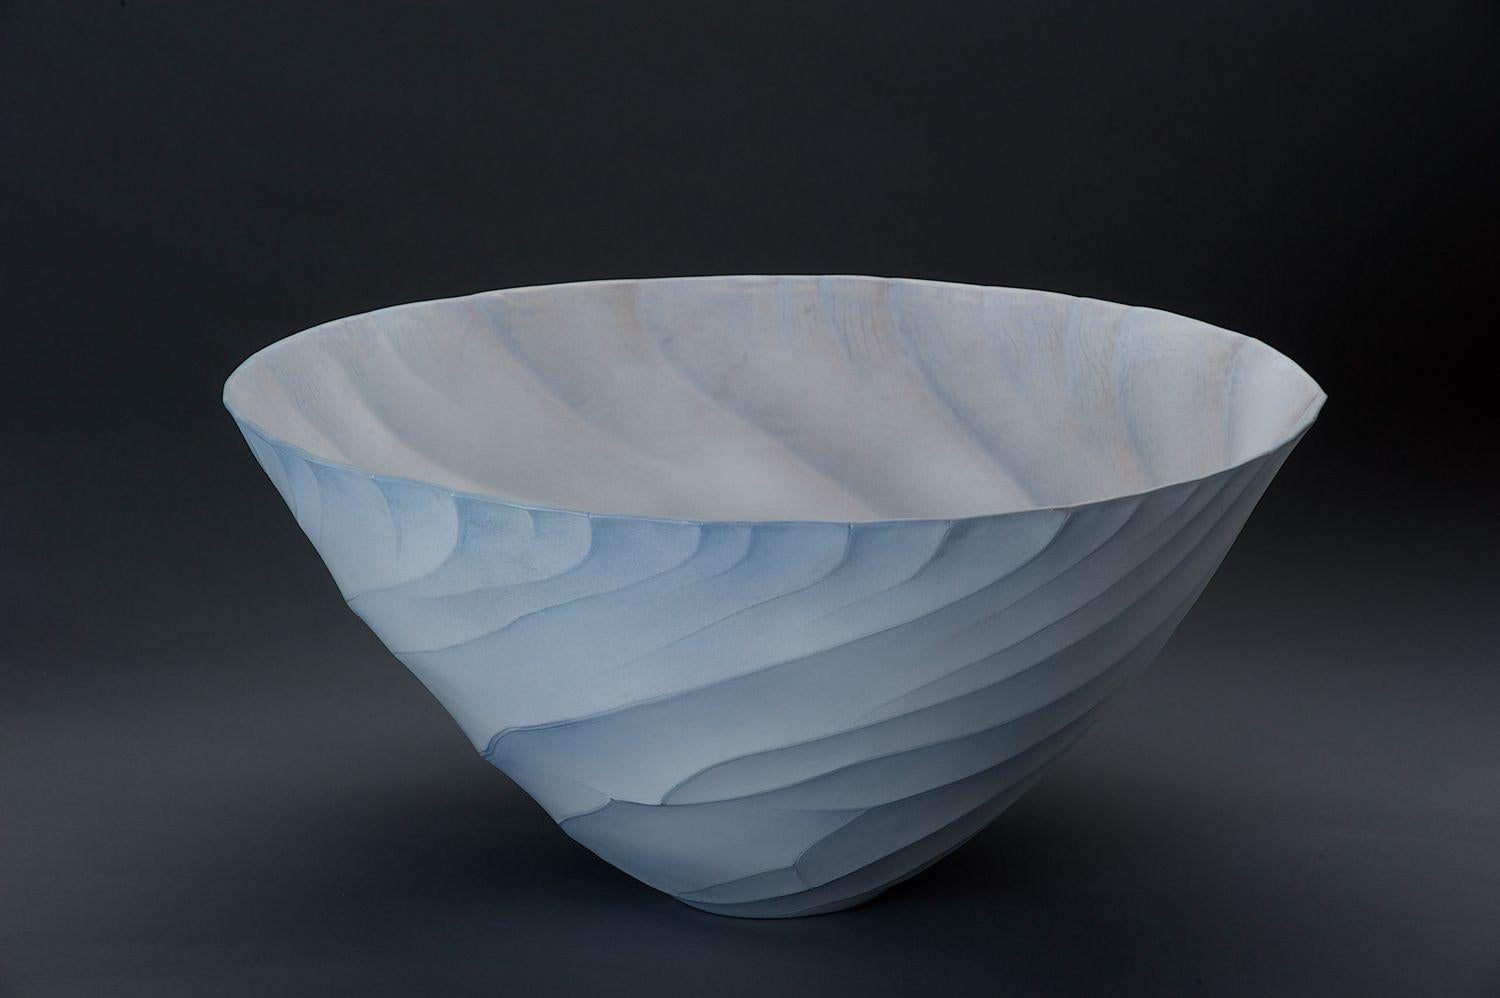 Contemporary Porcelain Bowl / Vessel von der Keramikkünstlerin Paula Murray, Light Blue

Eine zeitgenössische Porzellanschale aus der Serie 